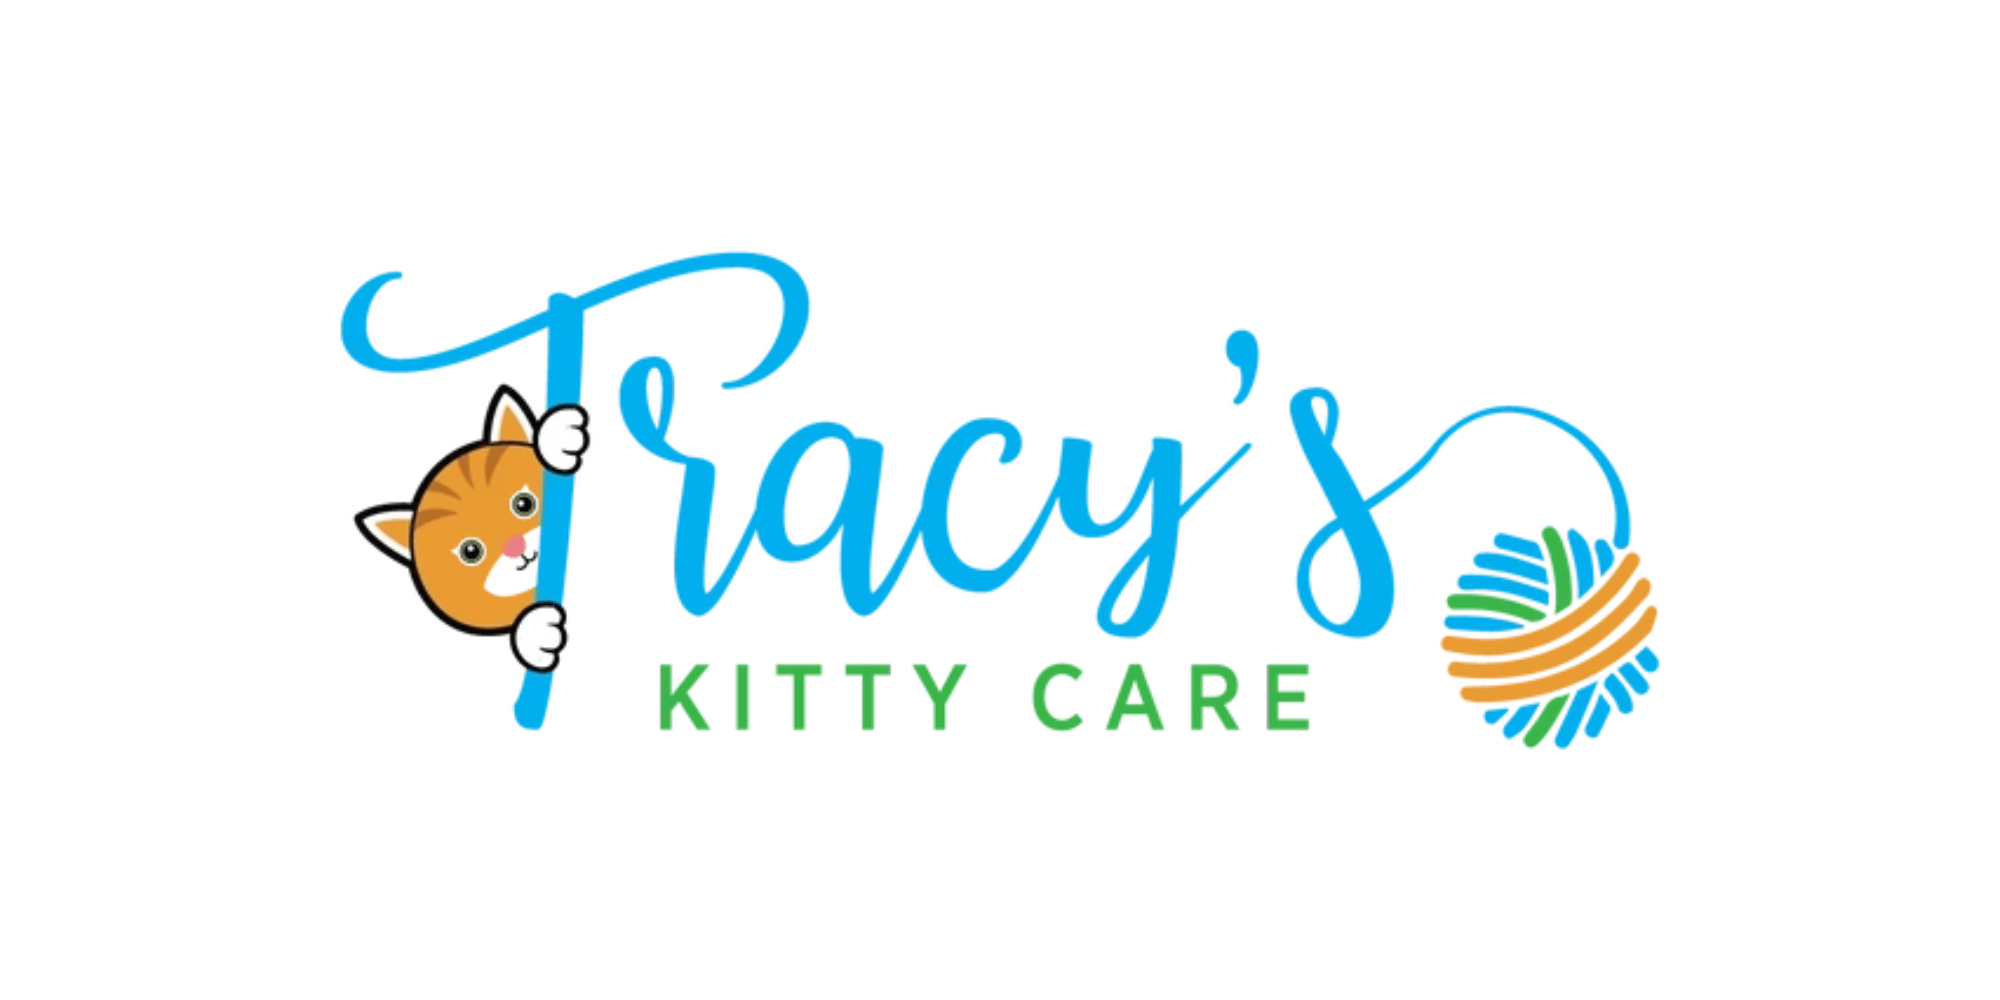 tracys-kitty-care-logo-summary